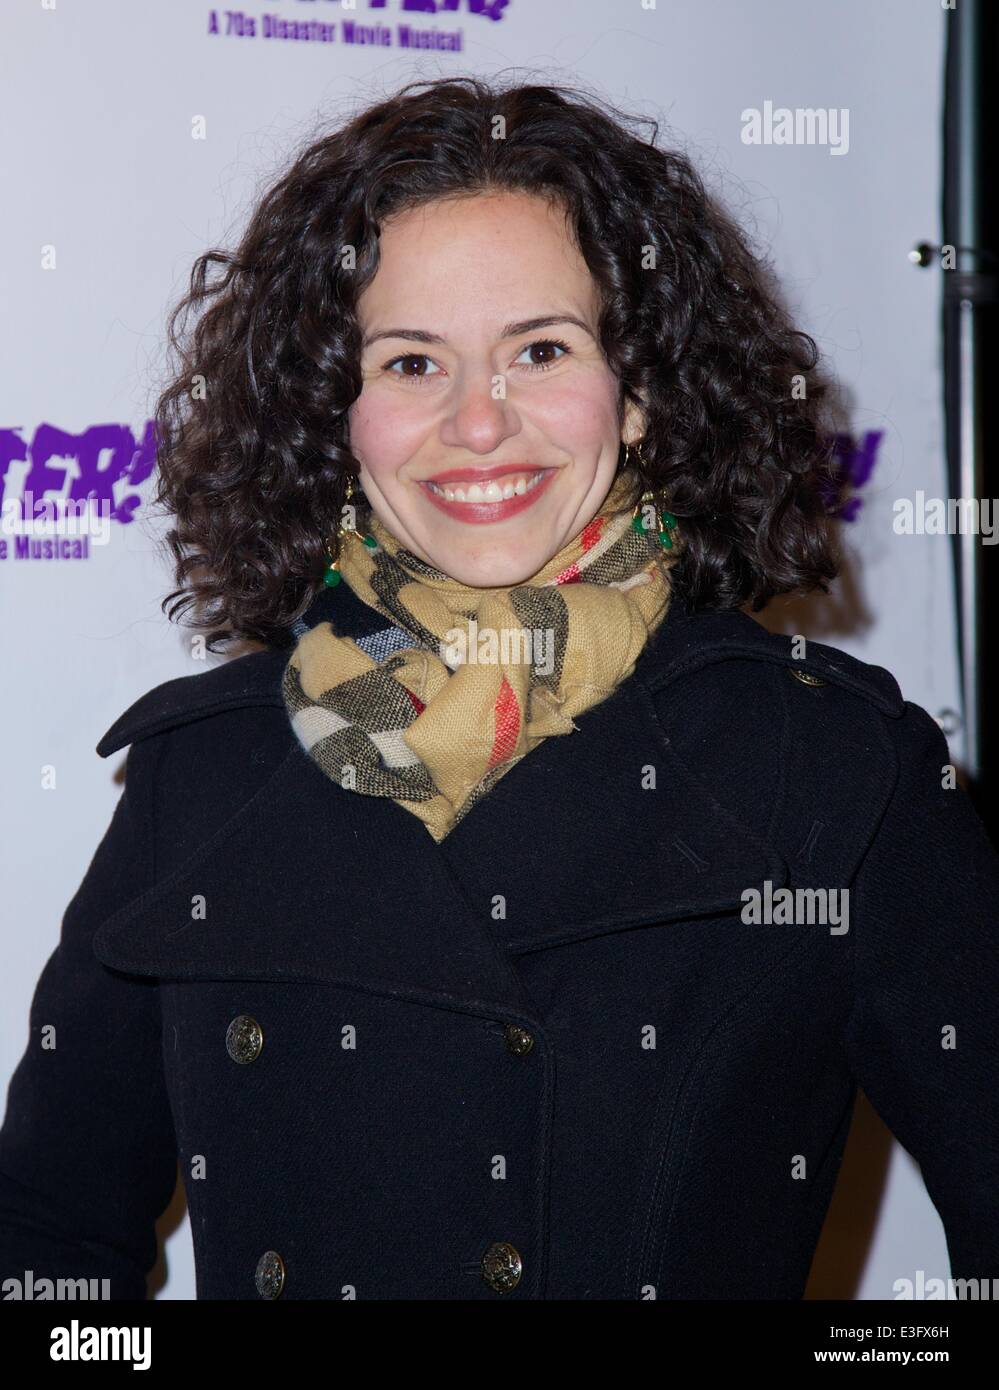 Die Premiere der Katastrophe! Off-Broadway in St. Lukes Theater mit: Mandy Gonzalez wo: New York City, NY, Vereinigte Staaten, wann: 4. November 2013 Stockfoto